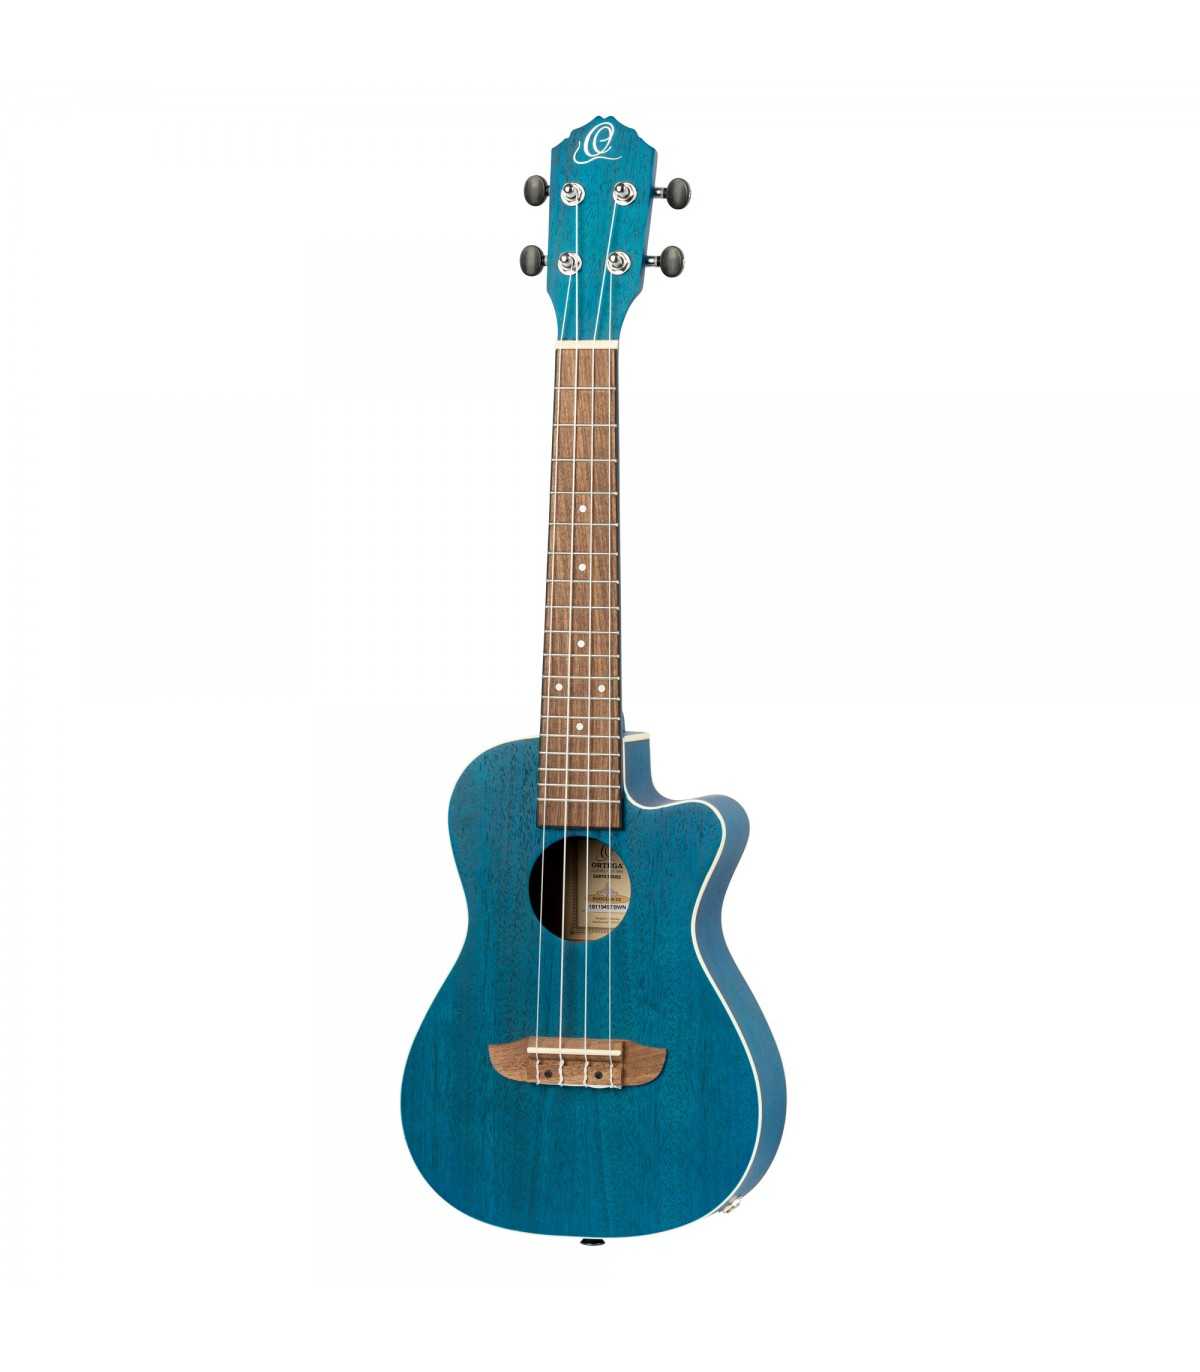 https://www.guitares-webstore.com/24627-superlarge_default/ukulele-concert-electro-ortega-okoume-cw-eq-bleu.jpg